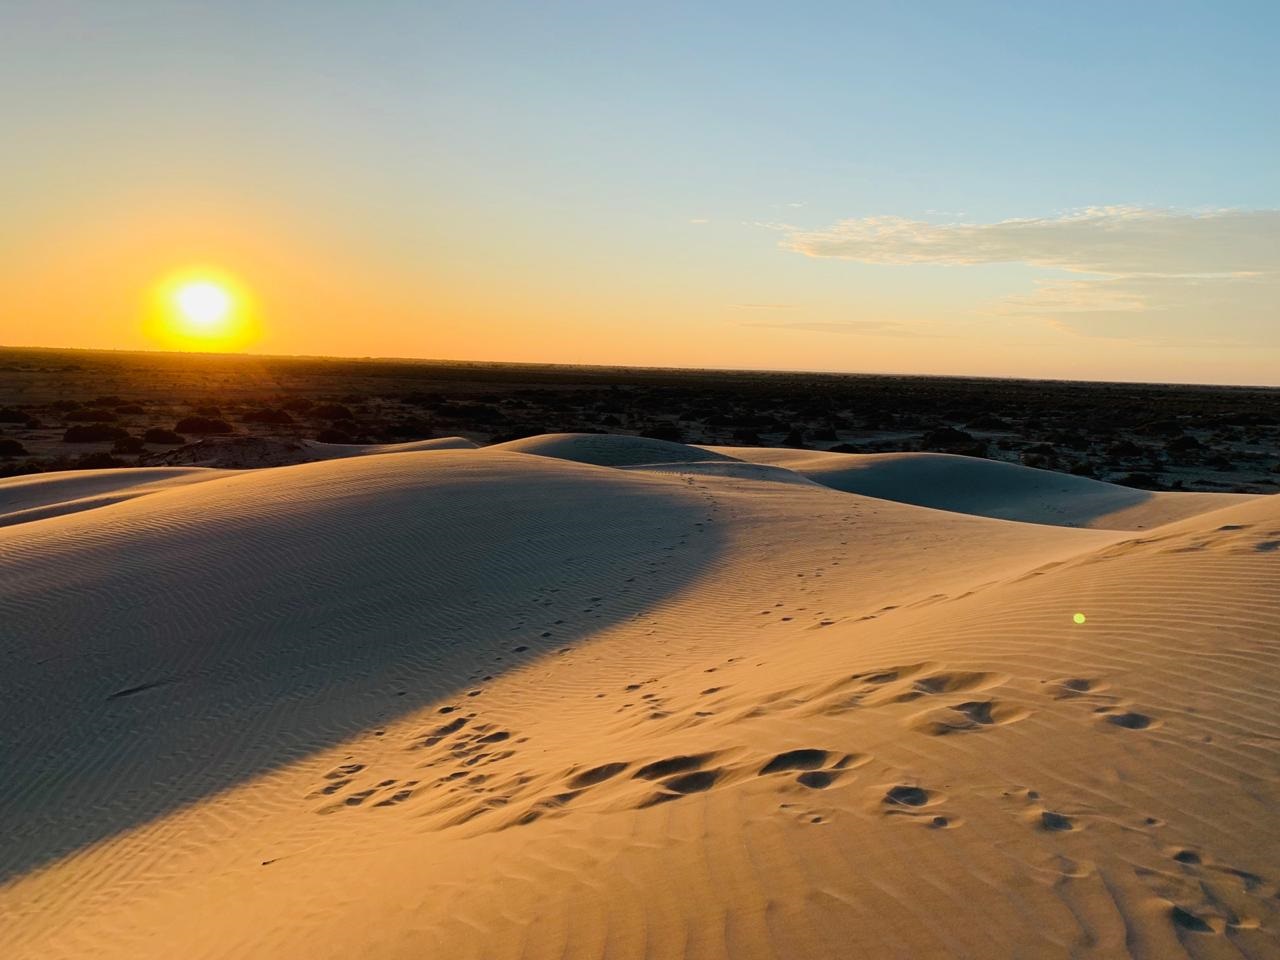 Desierto de Sechura, belleza natural que favorece el turismo